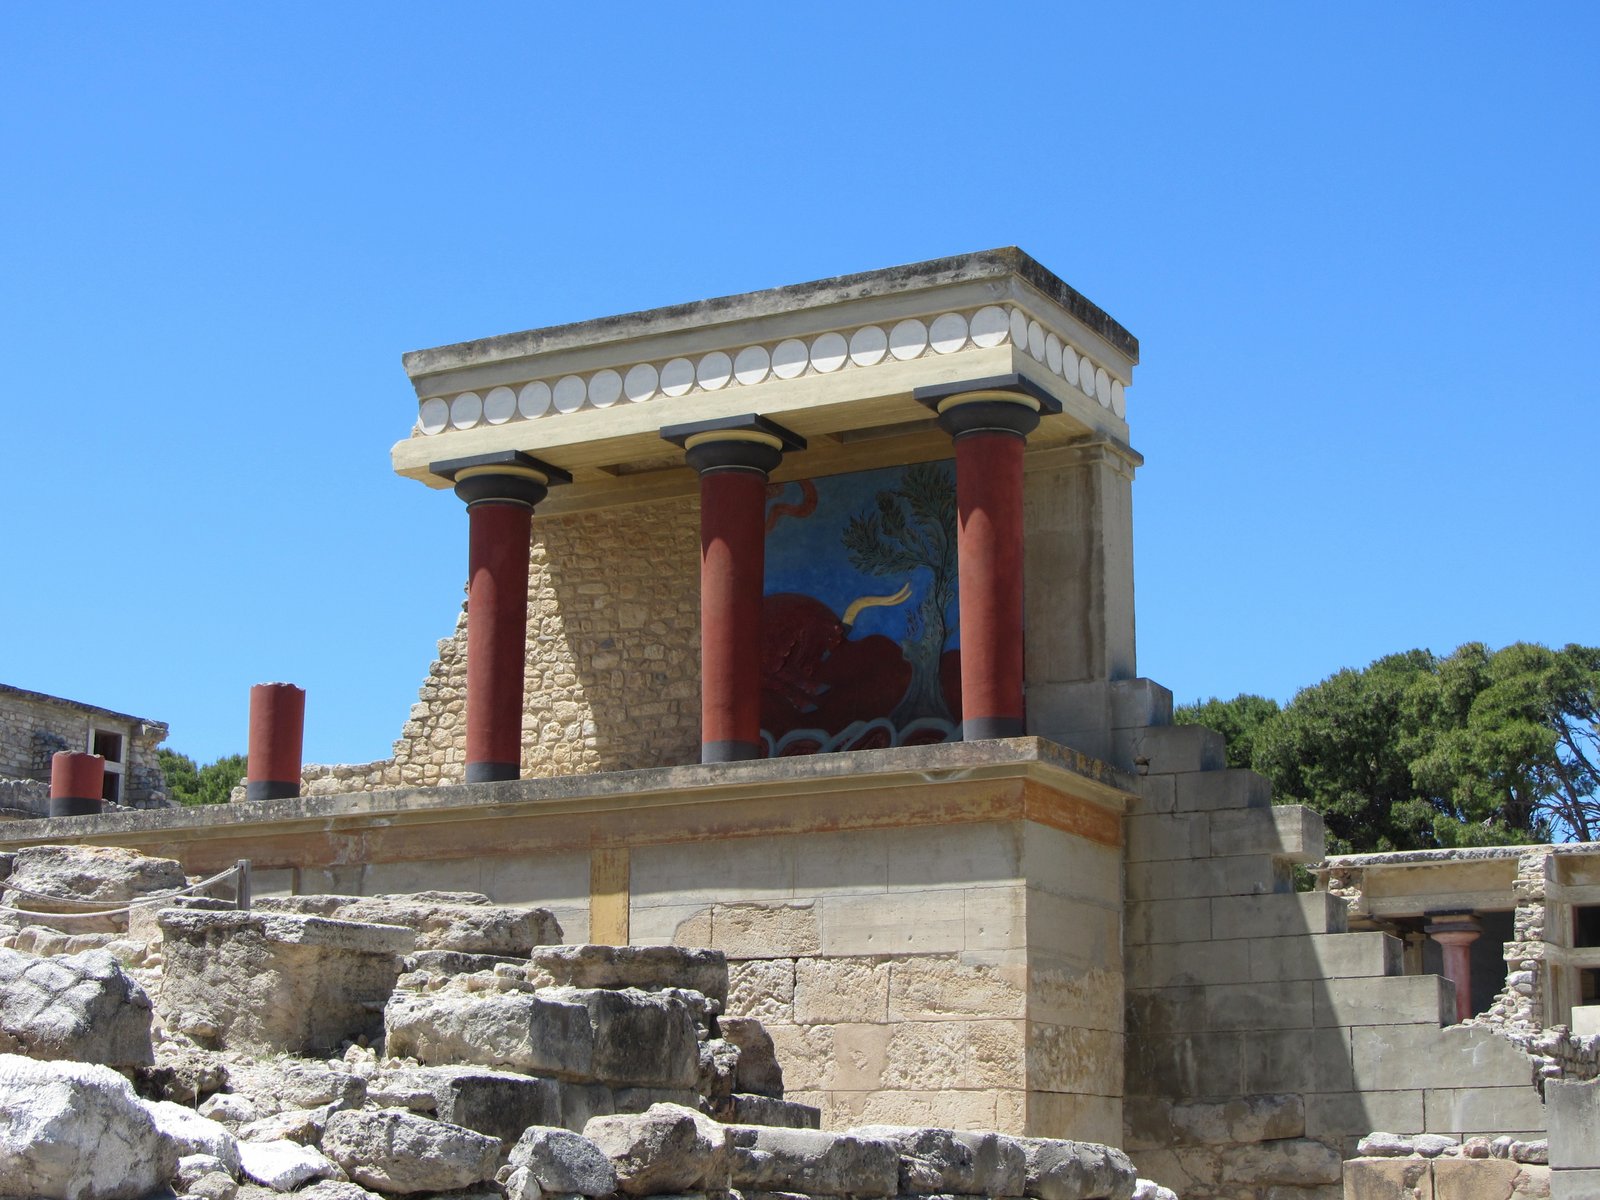 Fdalijiet tal-Palazz ta’ Knossos fi Kreta